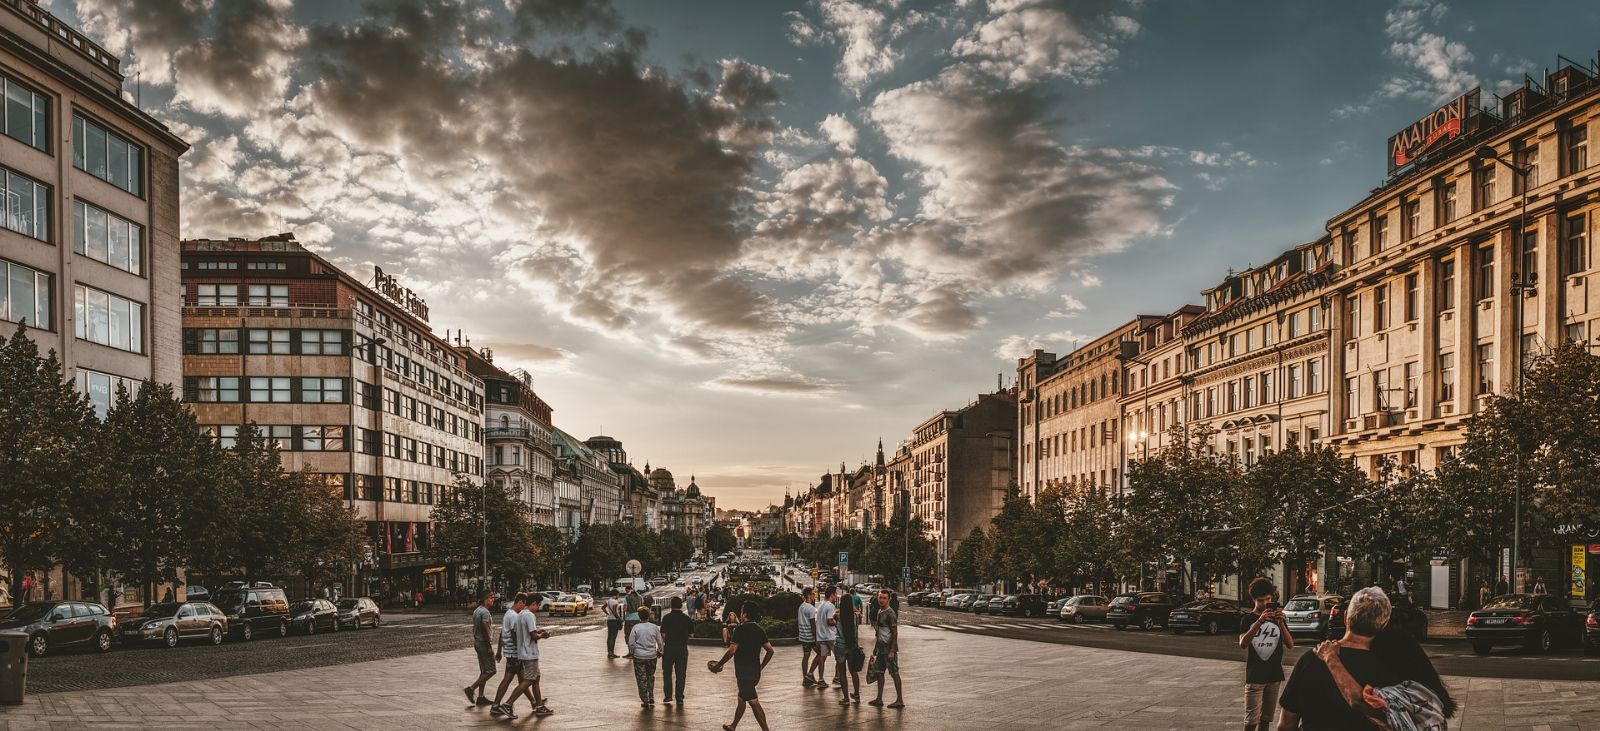 V roce 2020 Prahu navštívilo pouhých 2,2 milionů návštěvníků. Domácí turismus zaznamenal naopak mírné zvýšení